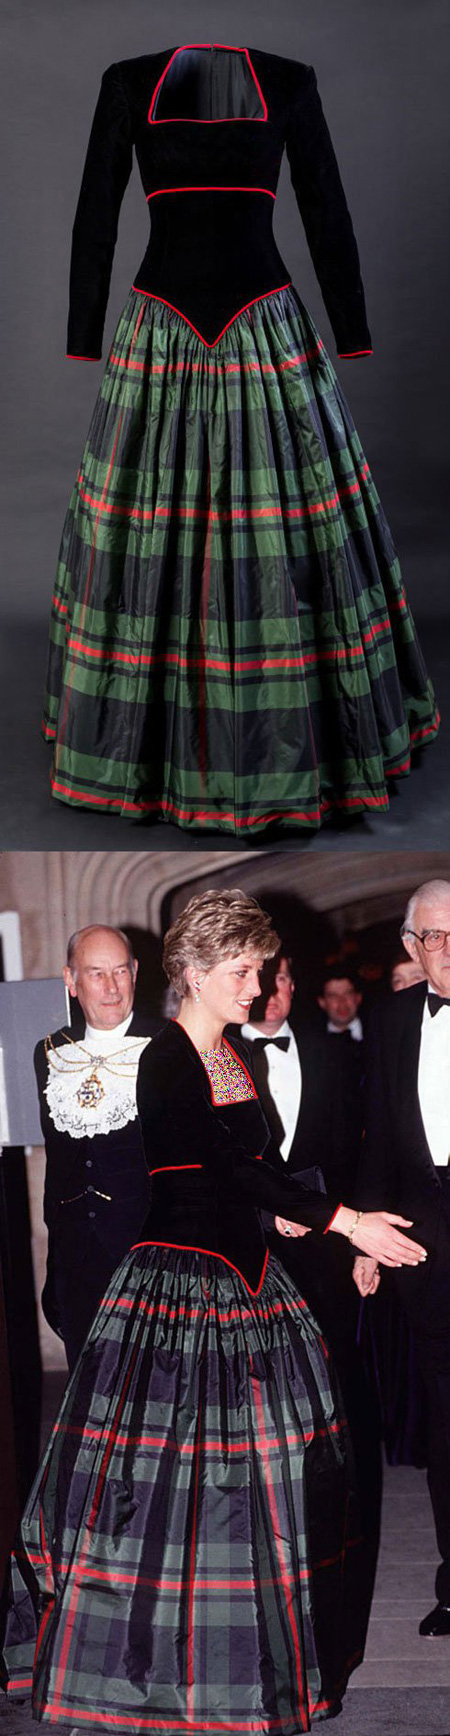 بهترین مدل لباس ملکه الیزابت, بهترین مدل لباس پرنسس دایانا